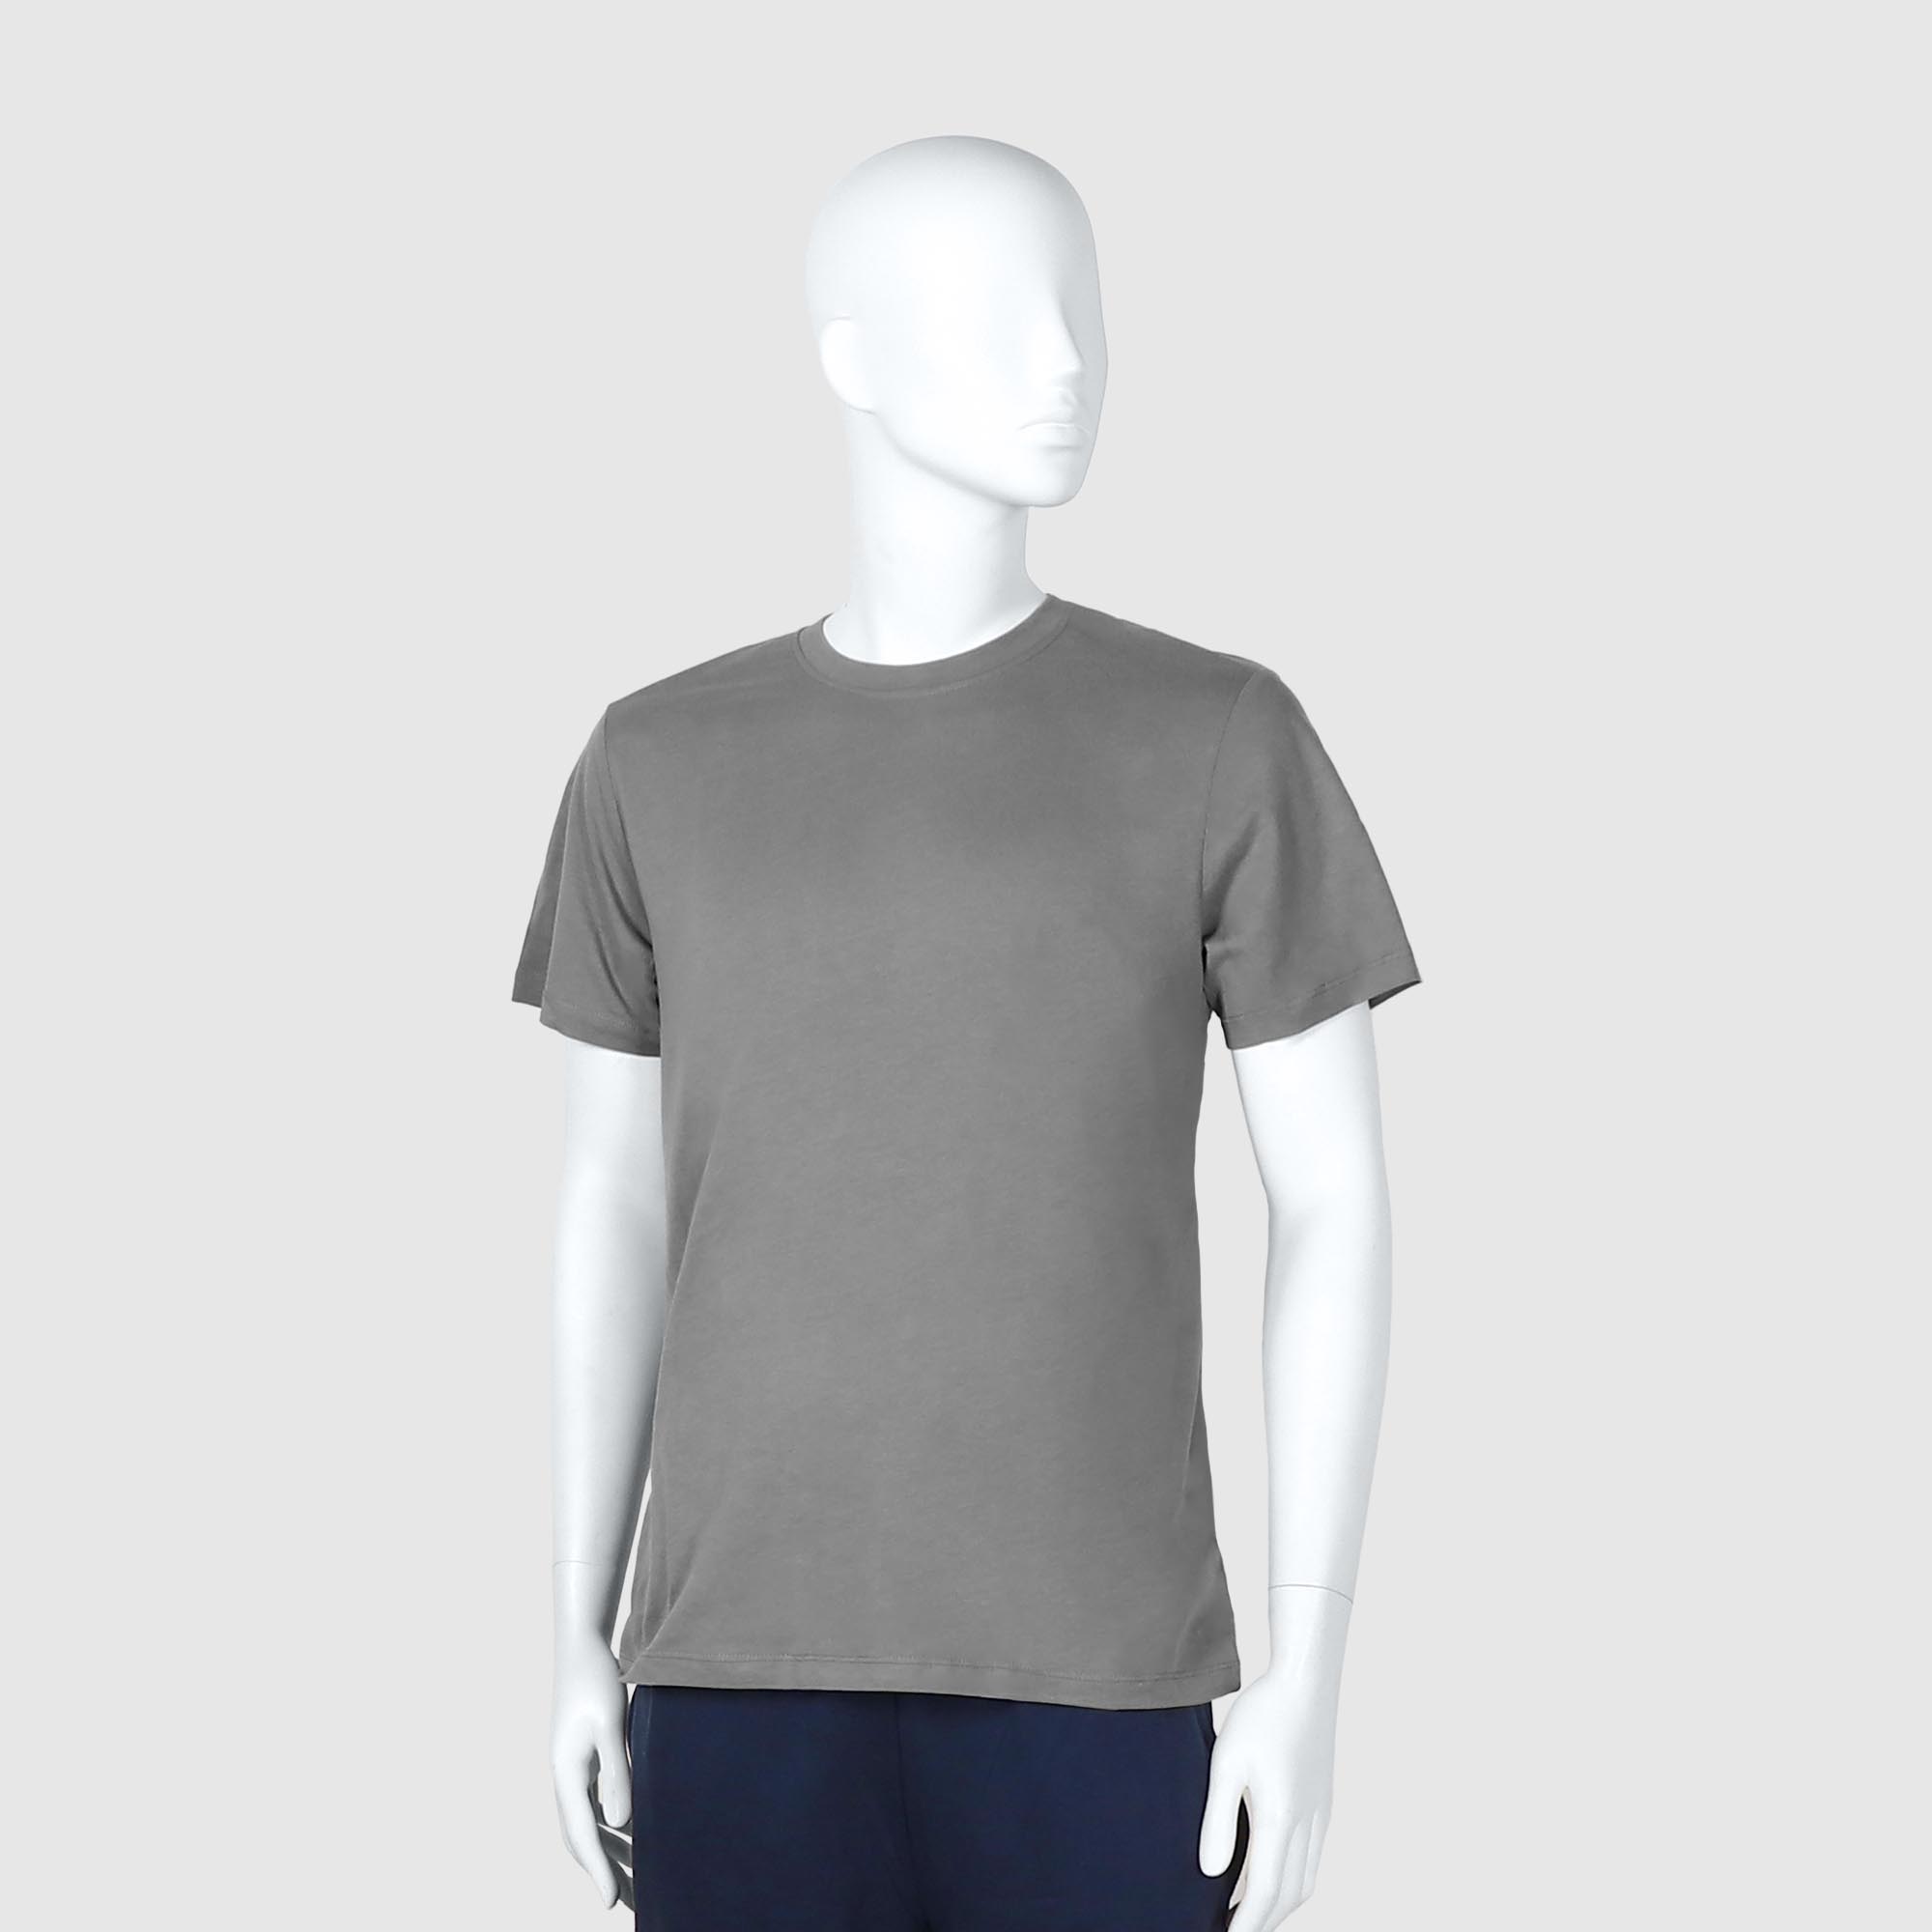 Мужская футболка Diva Teks серая (DTD-04), цвет серый, размер 44-46